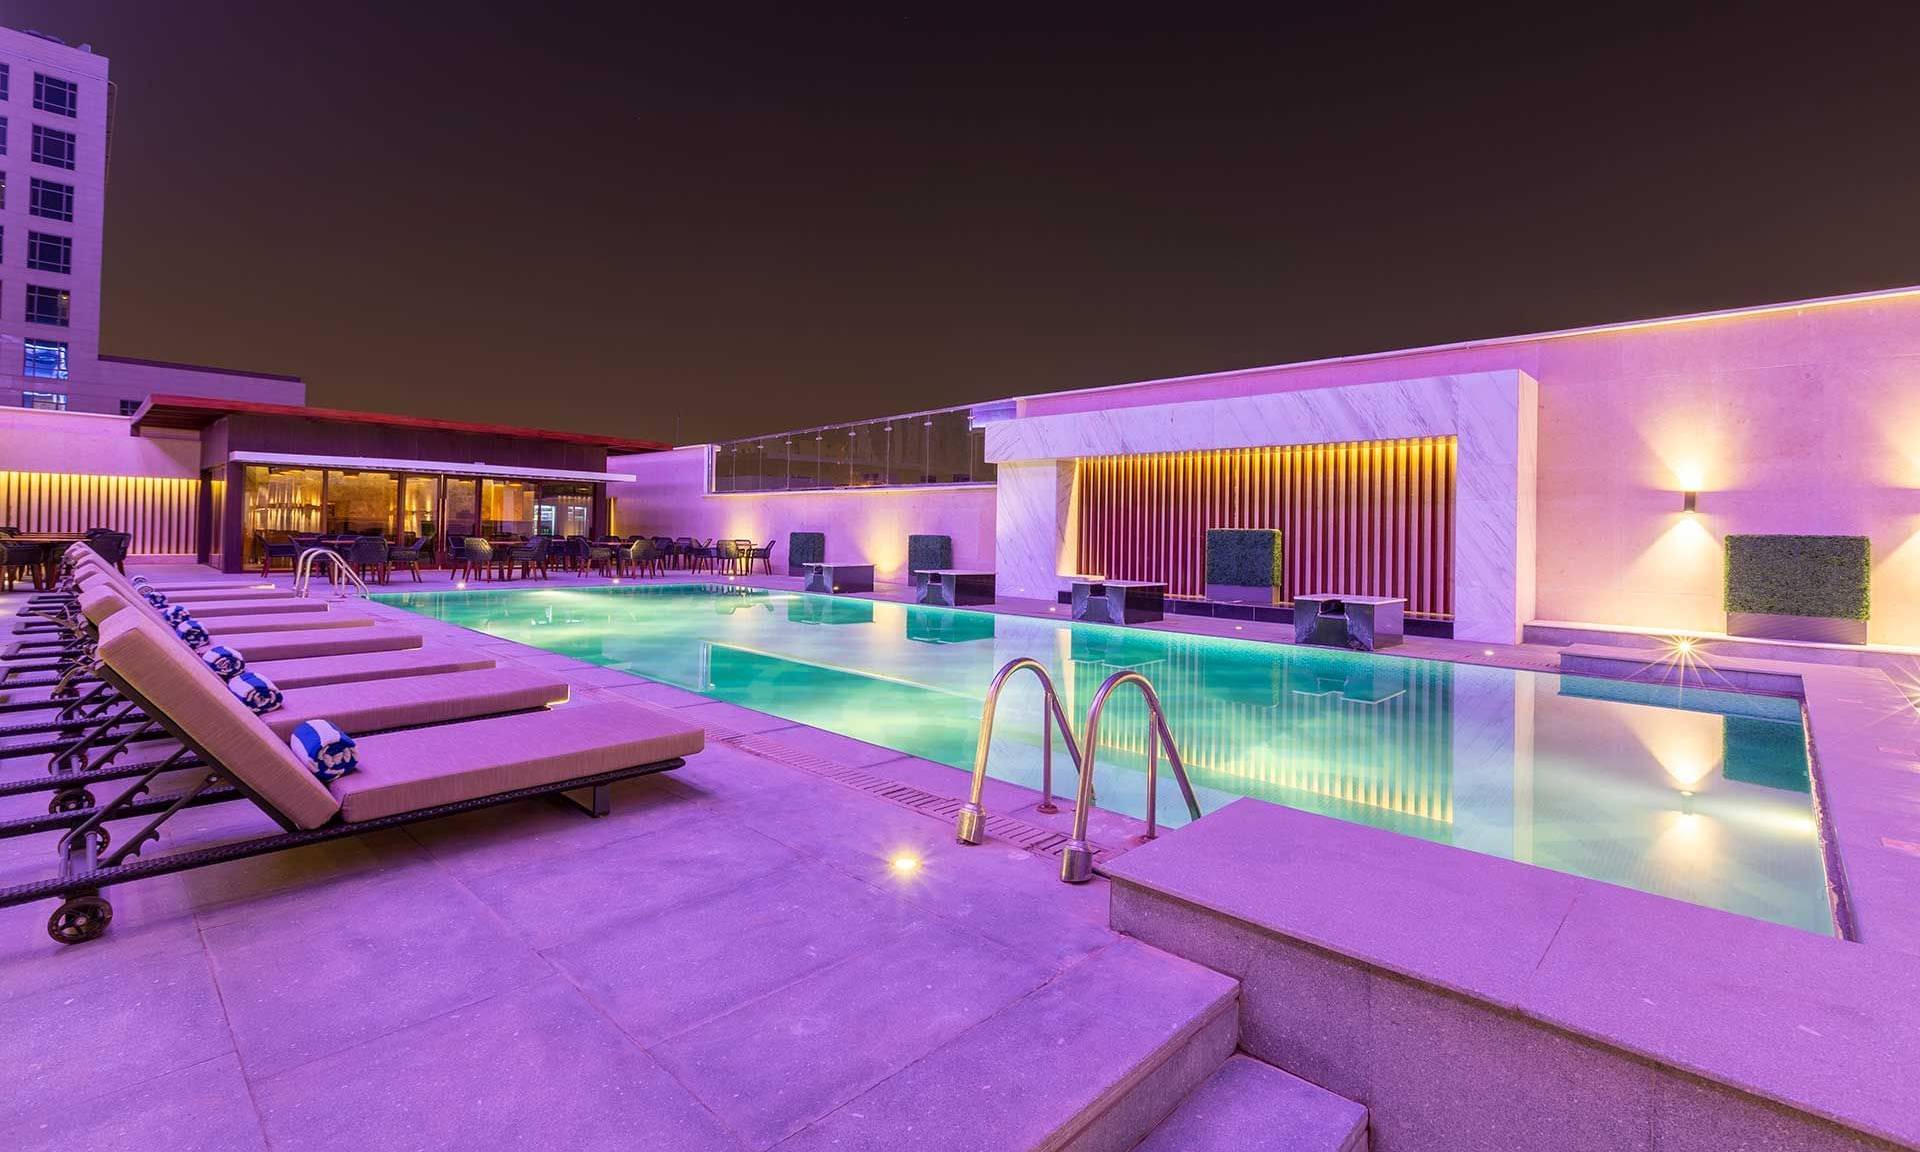 Joudyan Al Olaya Hotel – Riyadh